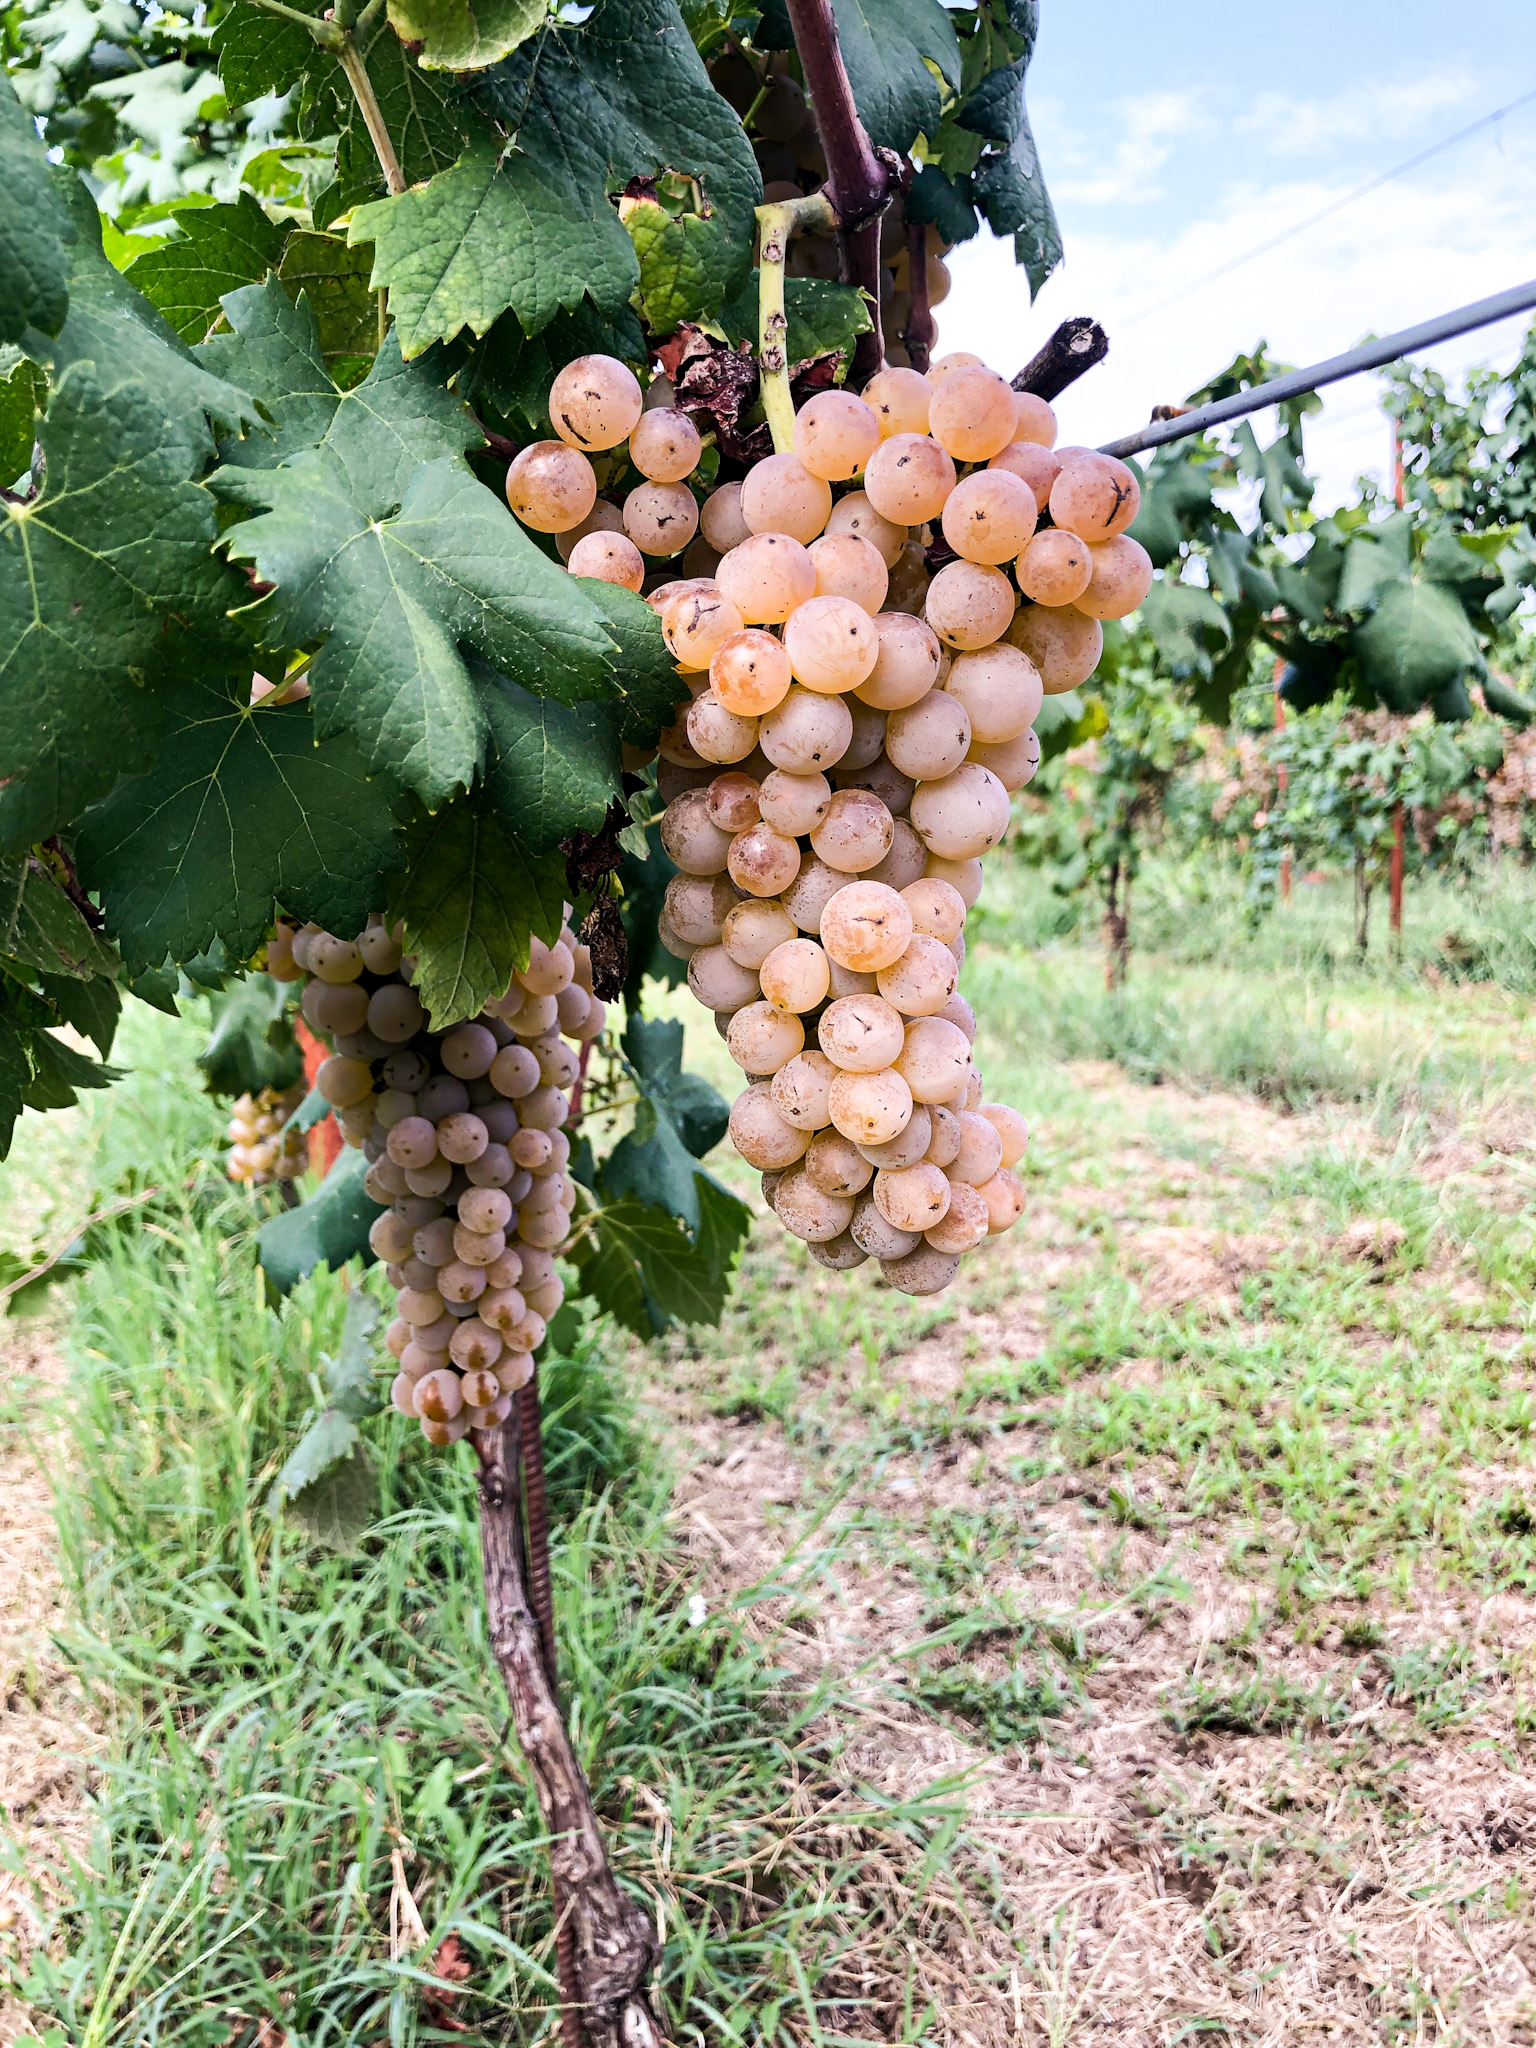 DIVULGAZIONE | Il vino che viene dai ghiacci -  Storia e peculiarità dei vini prodotti sul territorio morenico